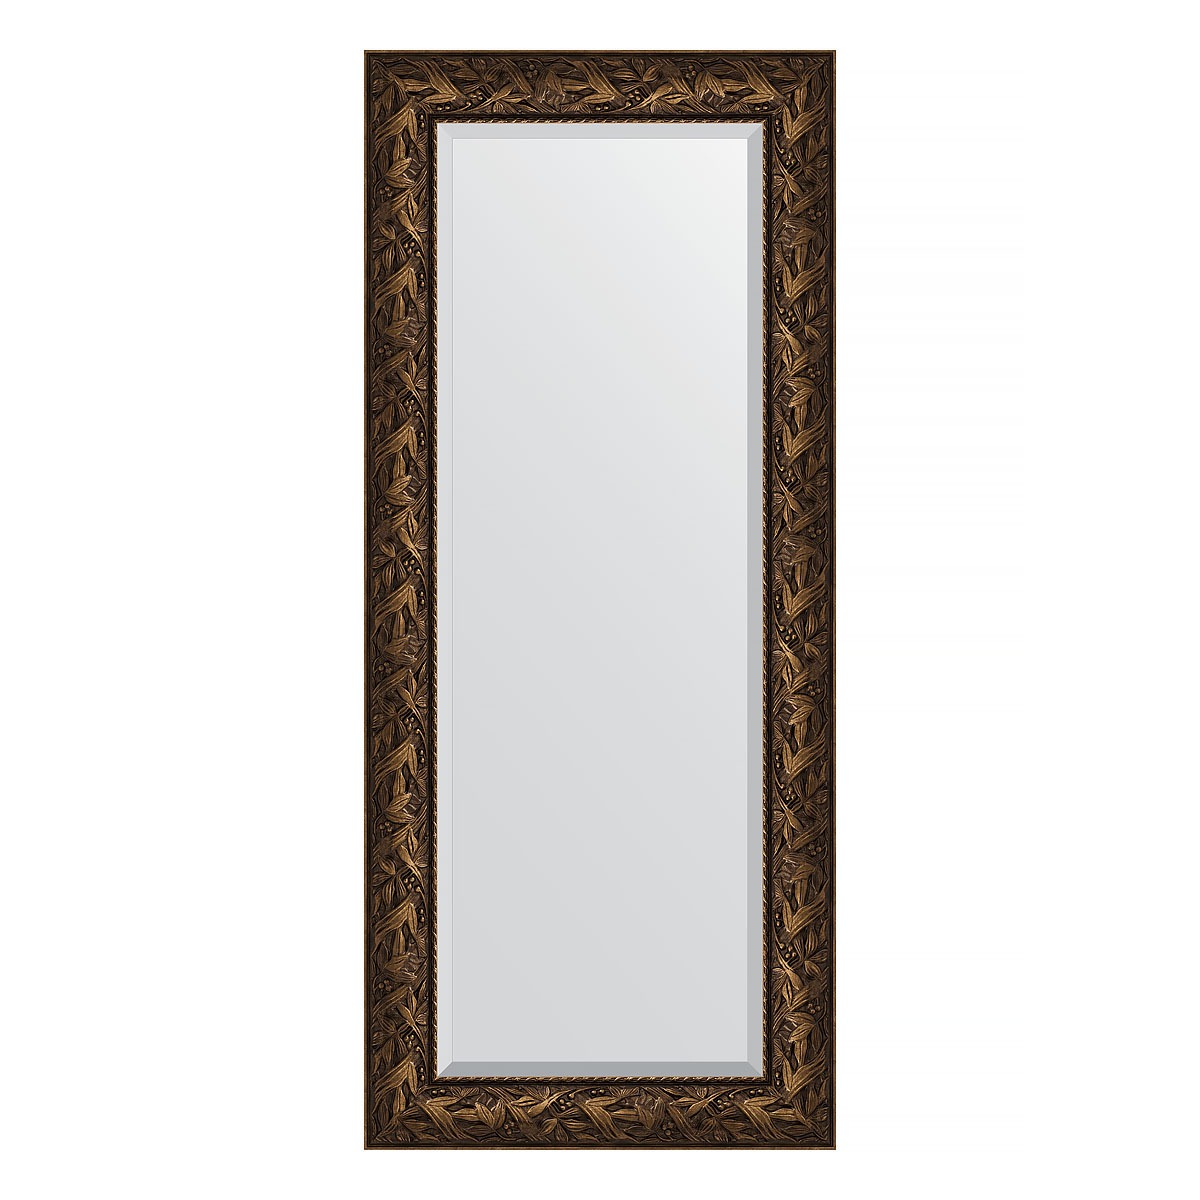 Зеркало с фацетом в багетной раме Evoform византия бронза 99 мм 64х149 см зеркало с фацетом в багетной раме evoform византия бронза 99 мм 64х149 см